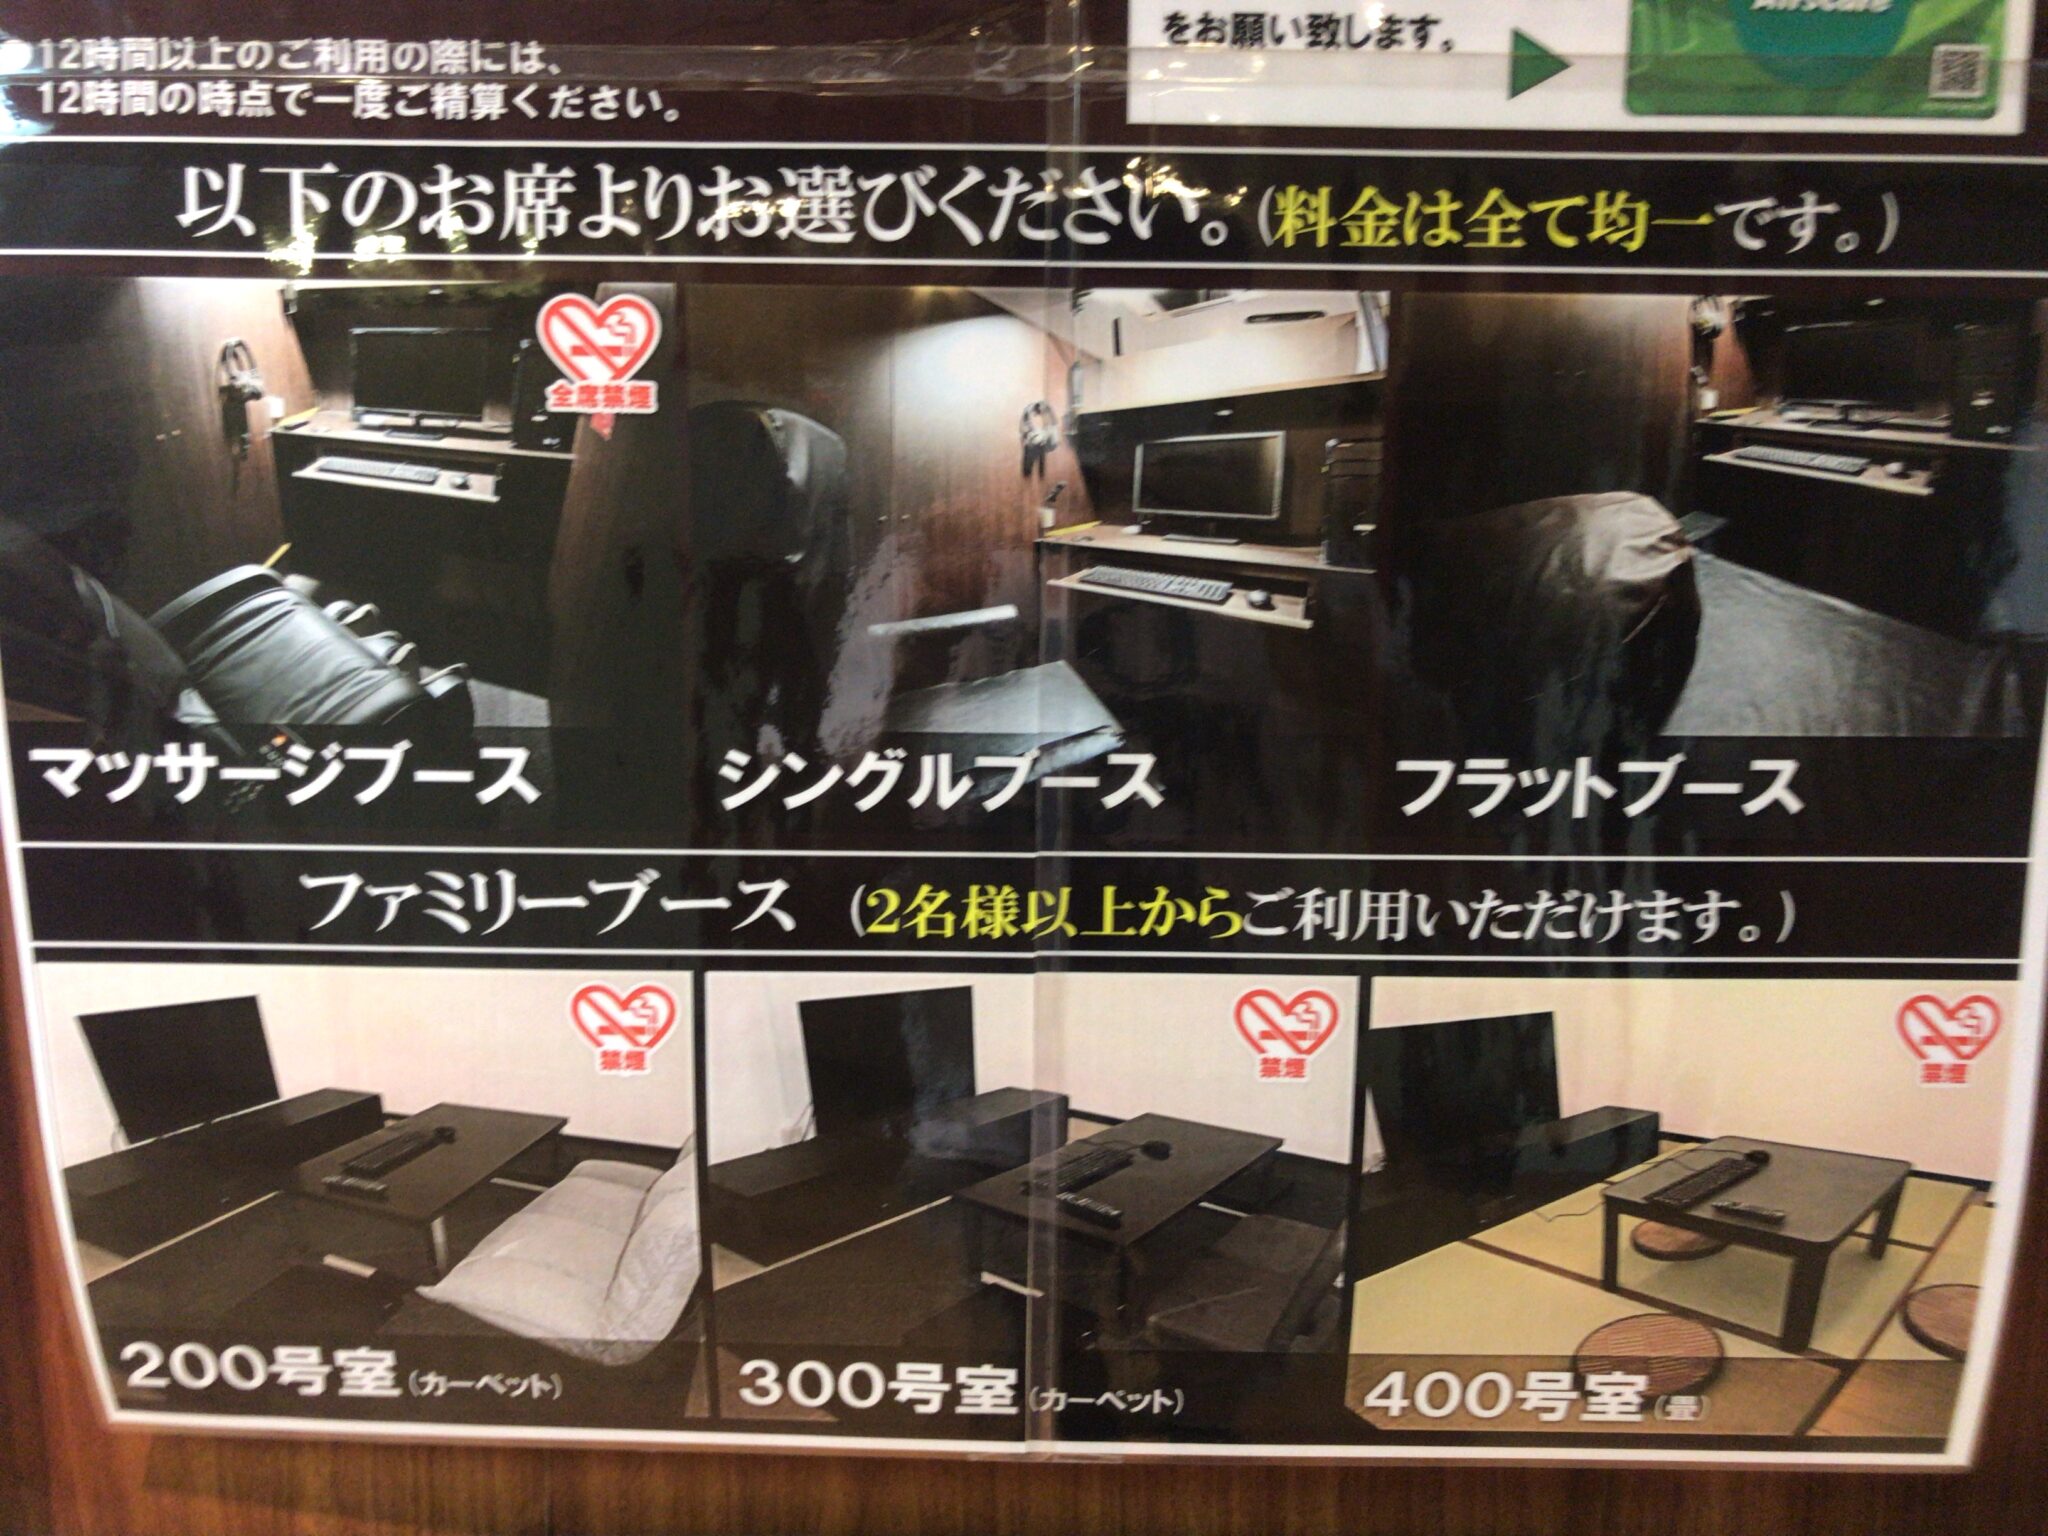 新潟駅から徒歩1分 エアーズカフェ 新潟駅前店をレポート 日本全国のネカフェ 漫画喫茶マップのヒマップ